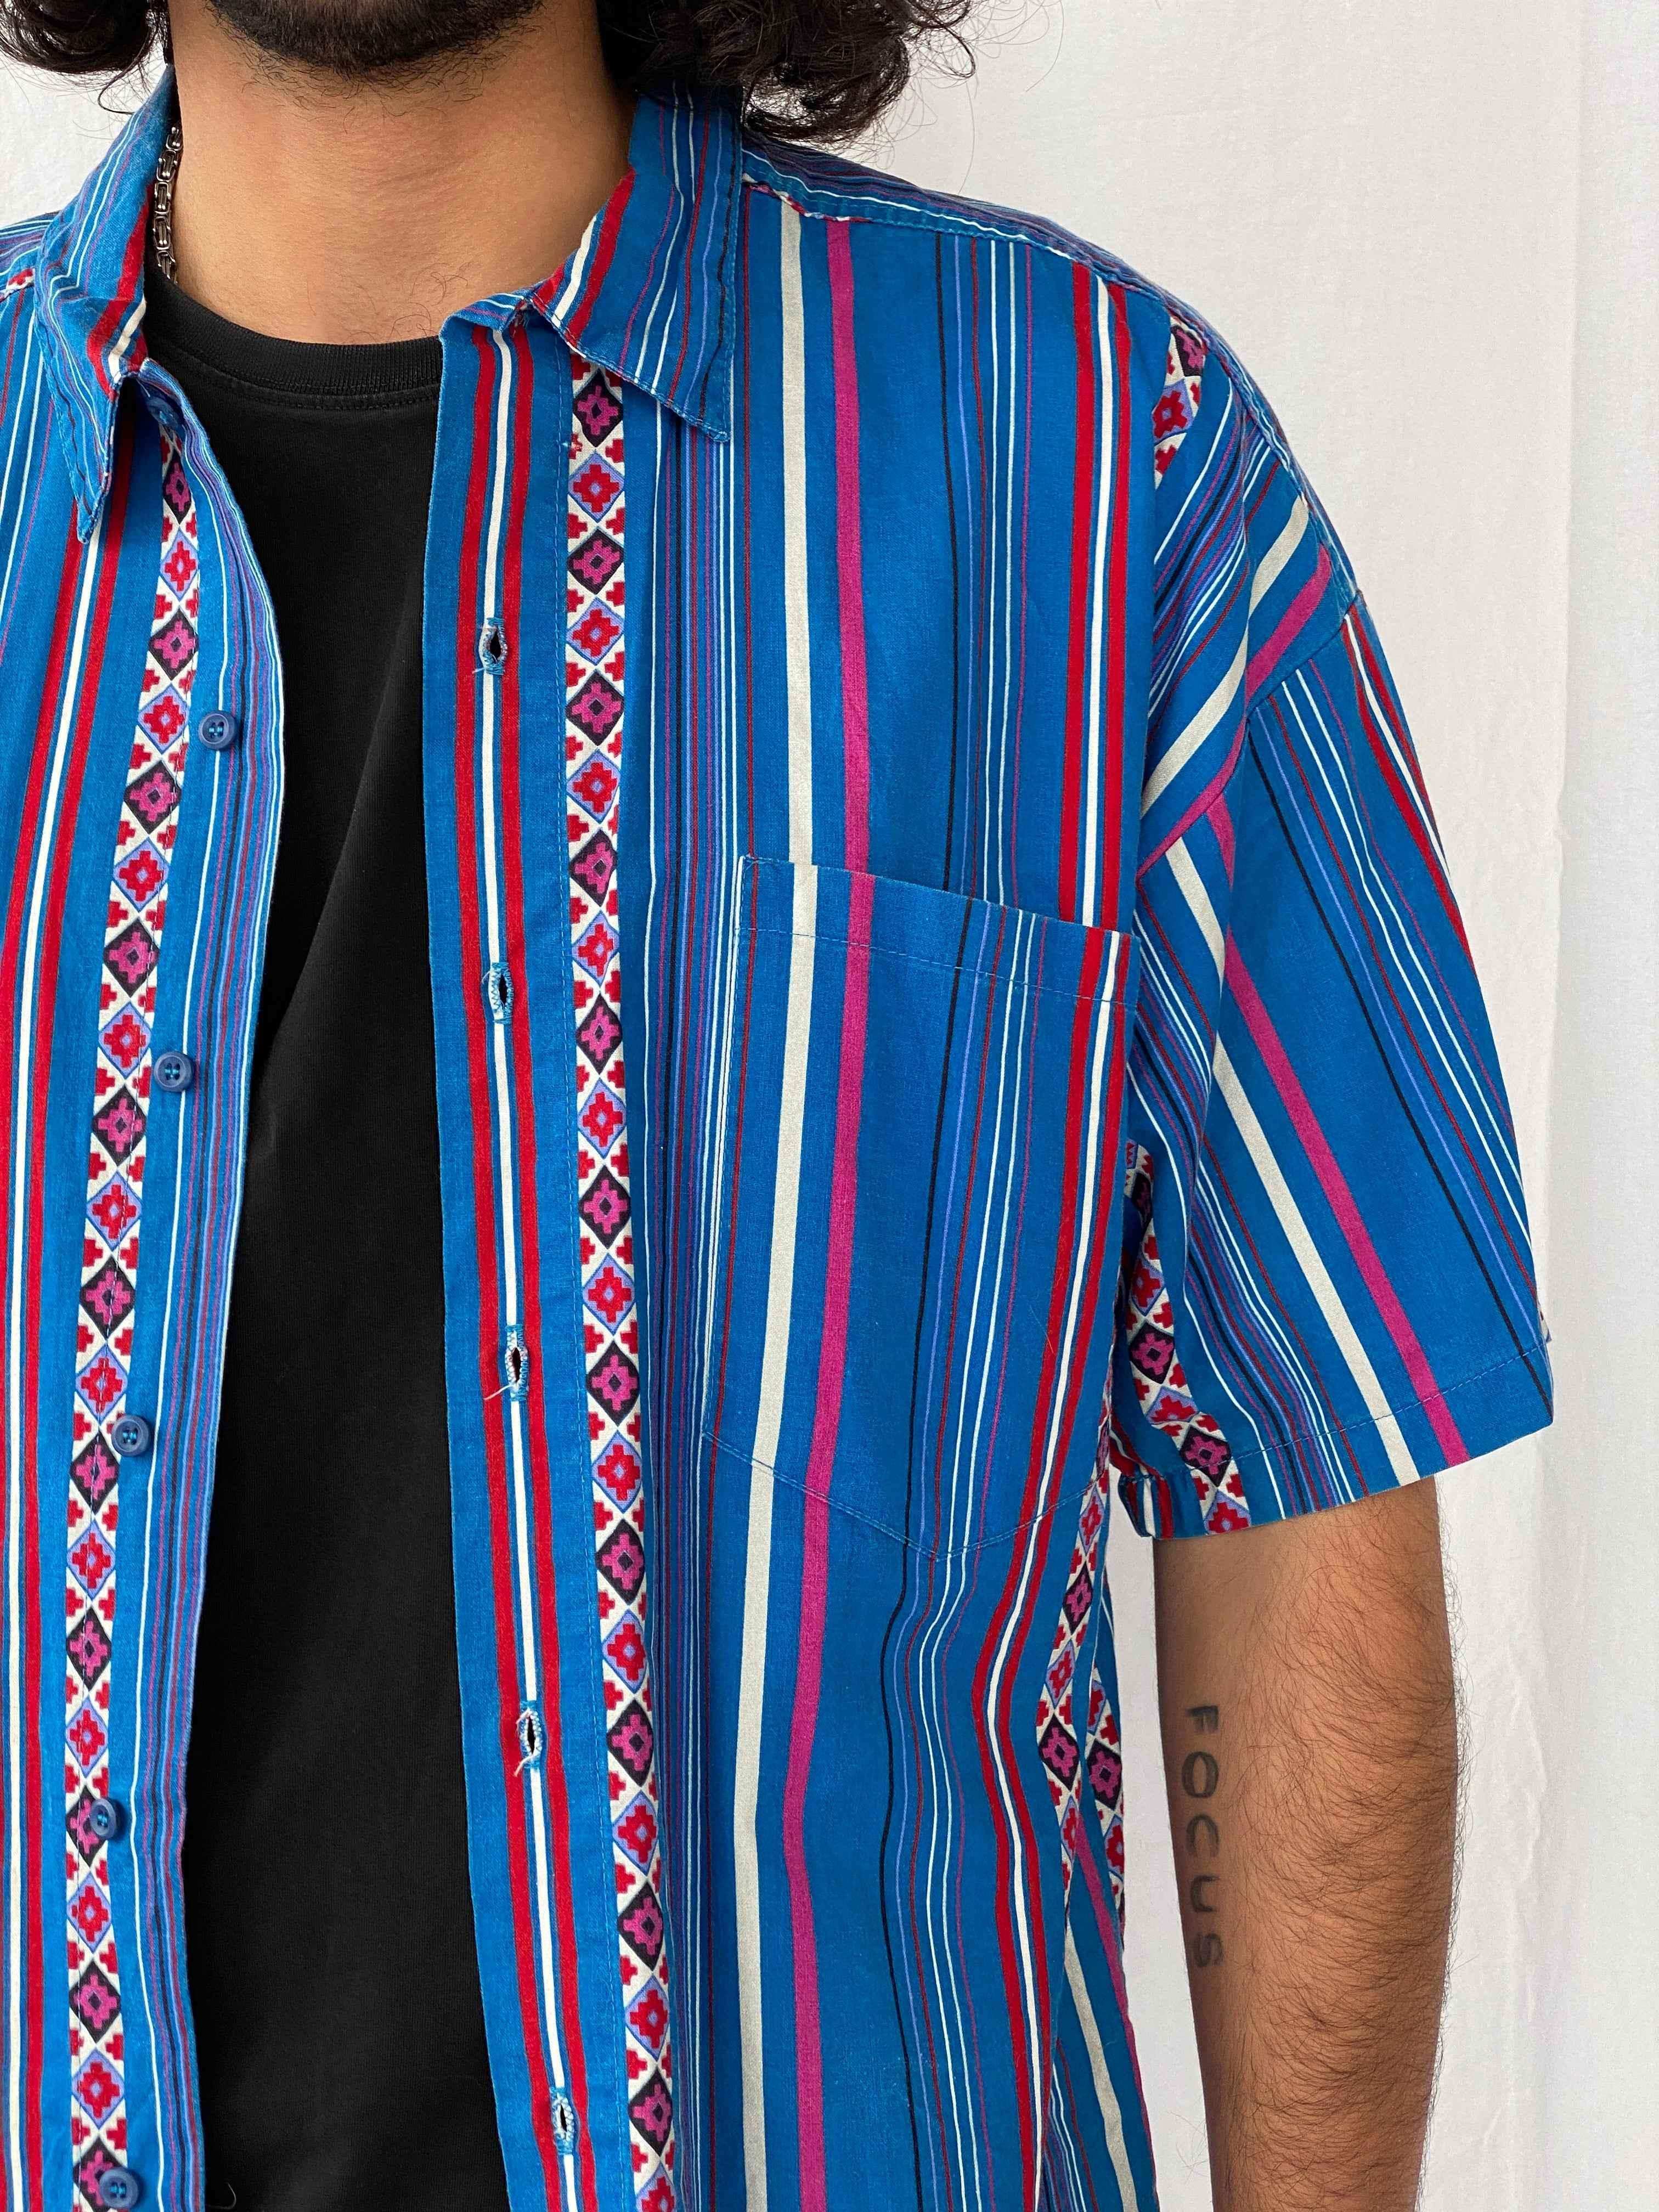 Vintage Frank Printed Shirt - Balagan Vintage Half Sleeve Shirt 90s, half sleeve shirt, men